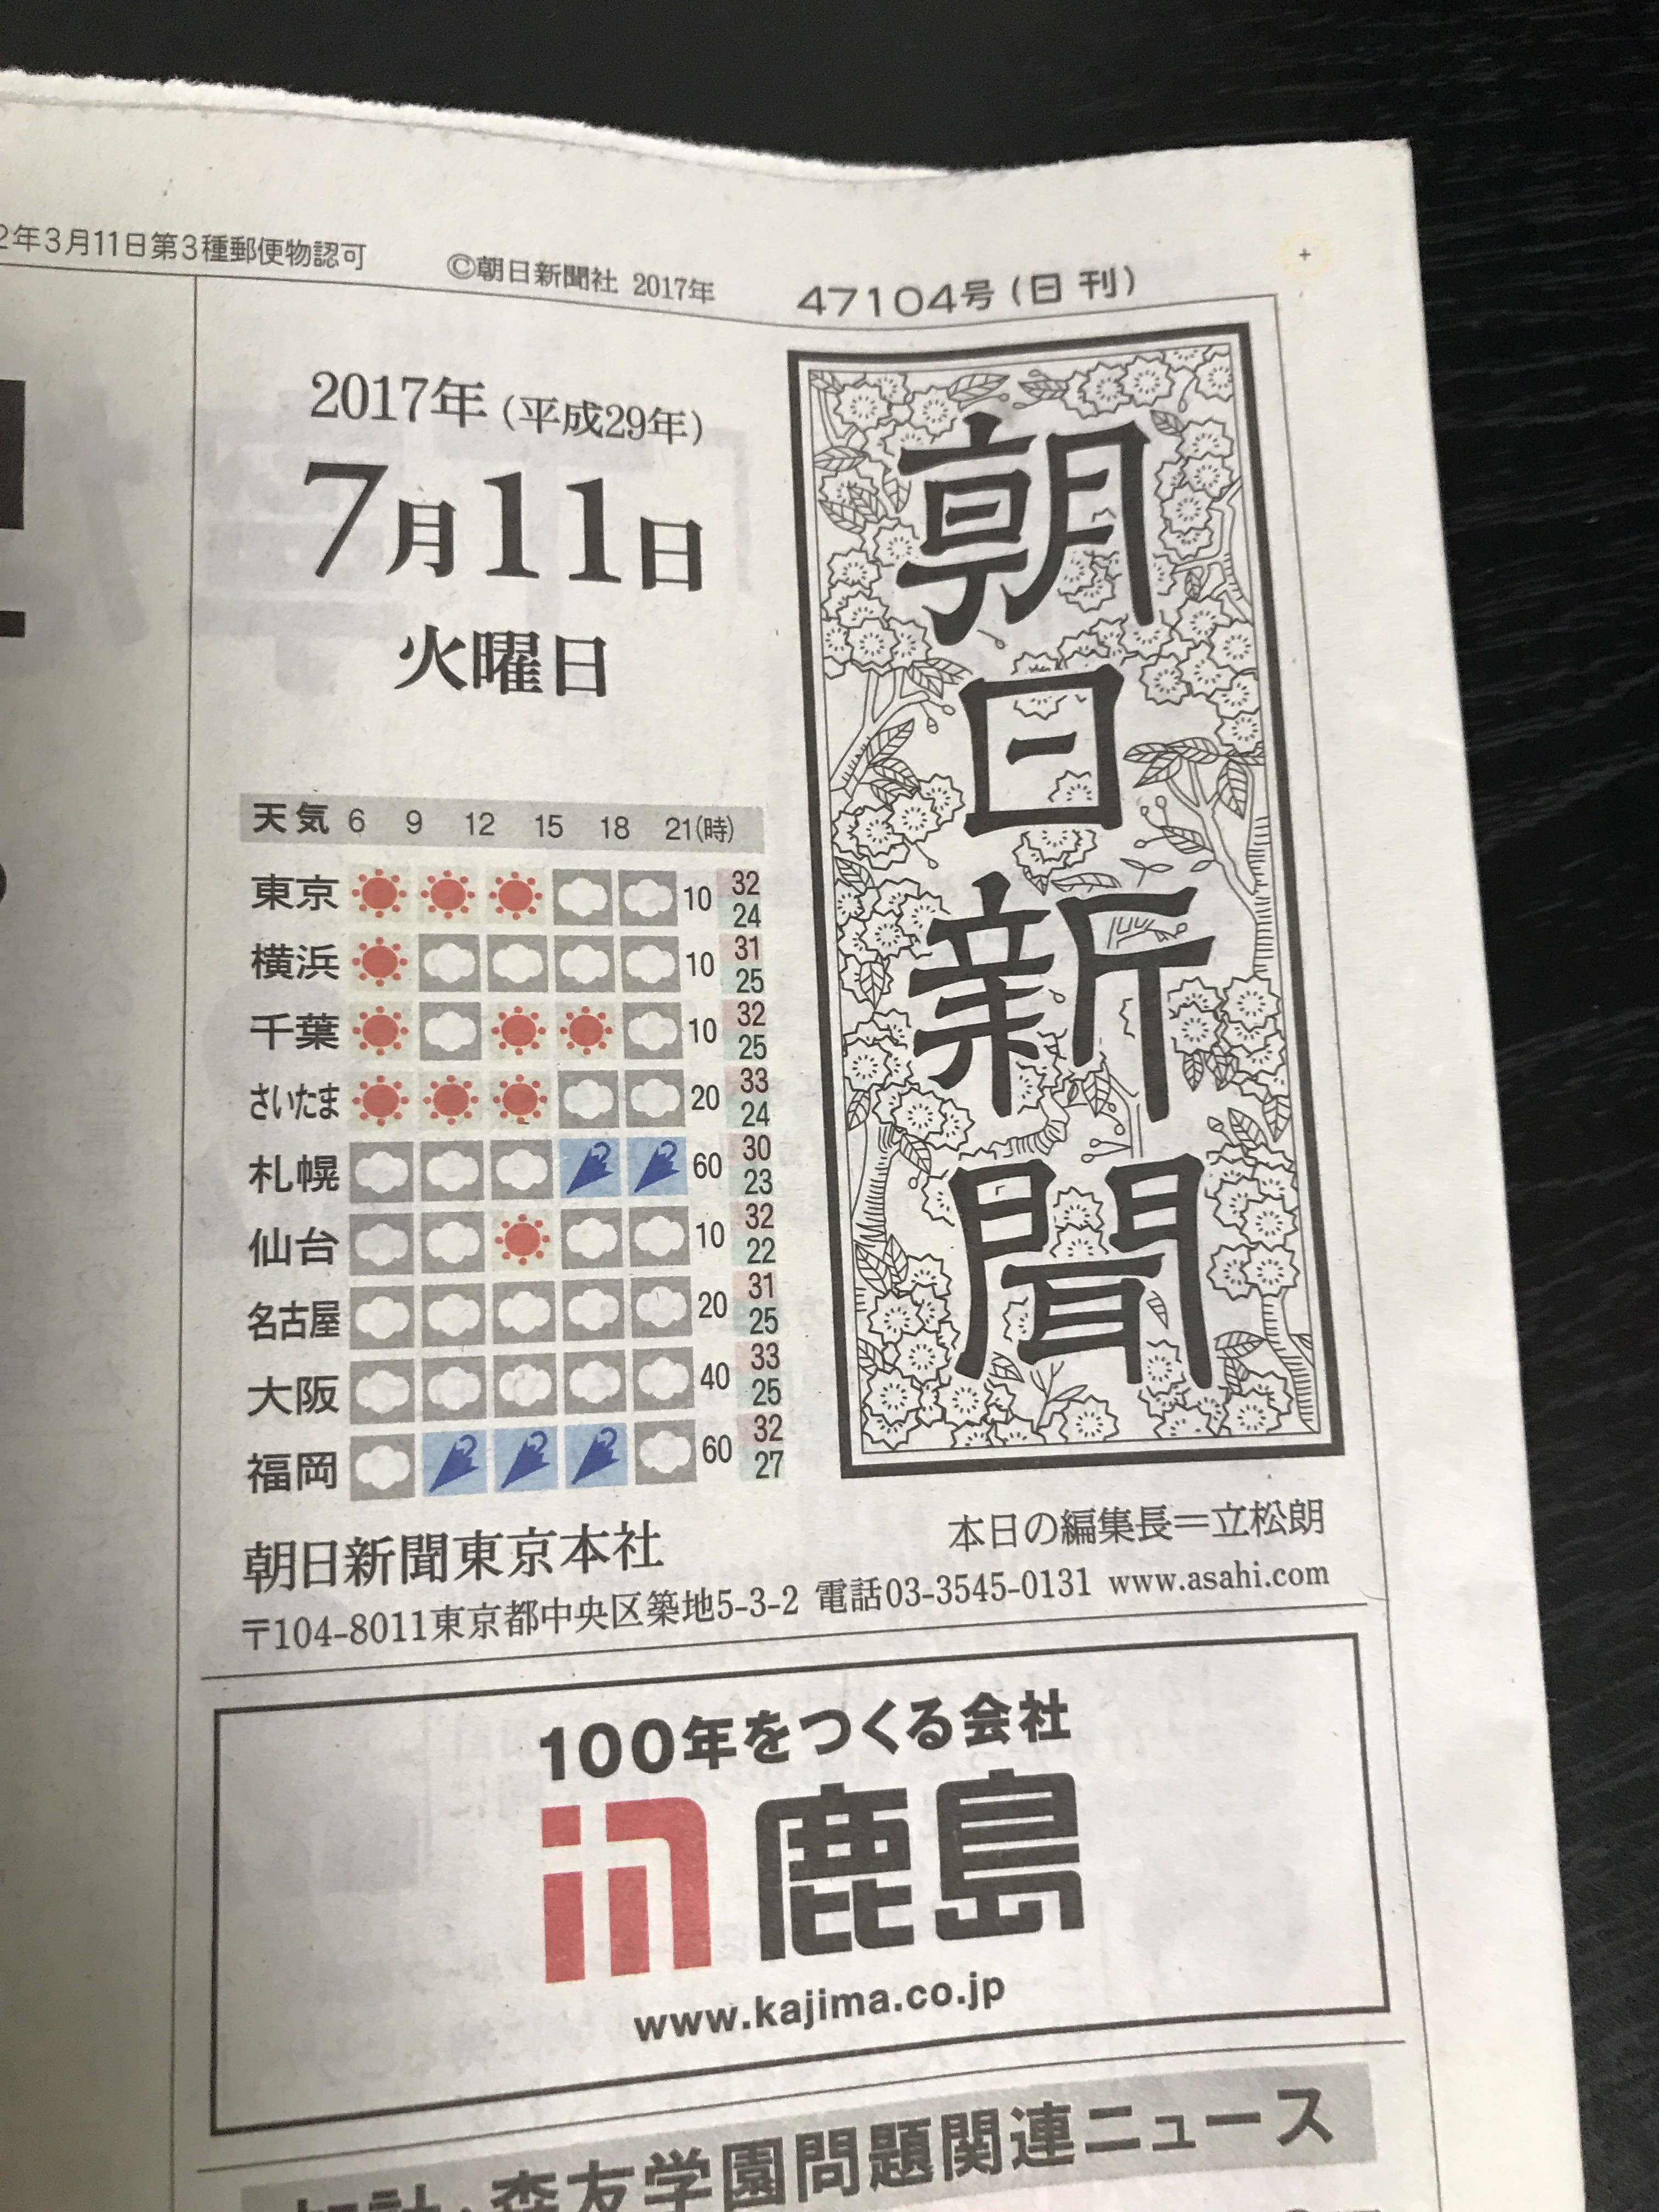 朝日新聞に広告が掲載されました。快速エクセル